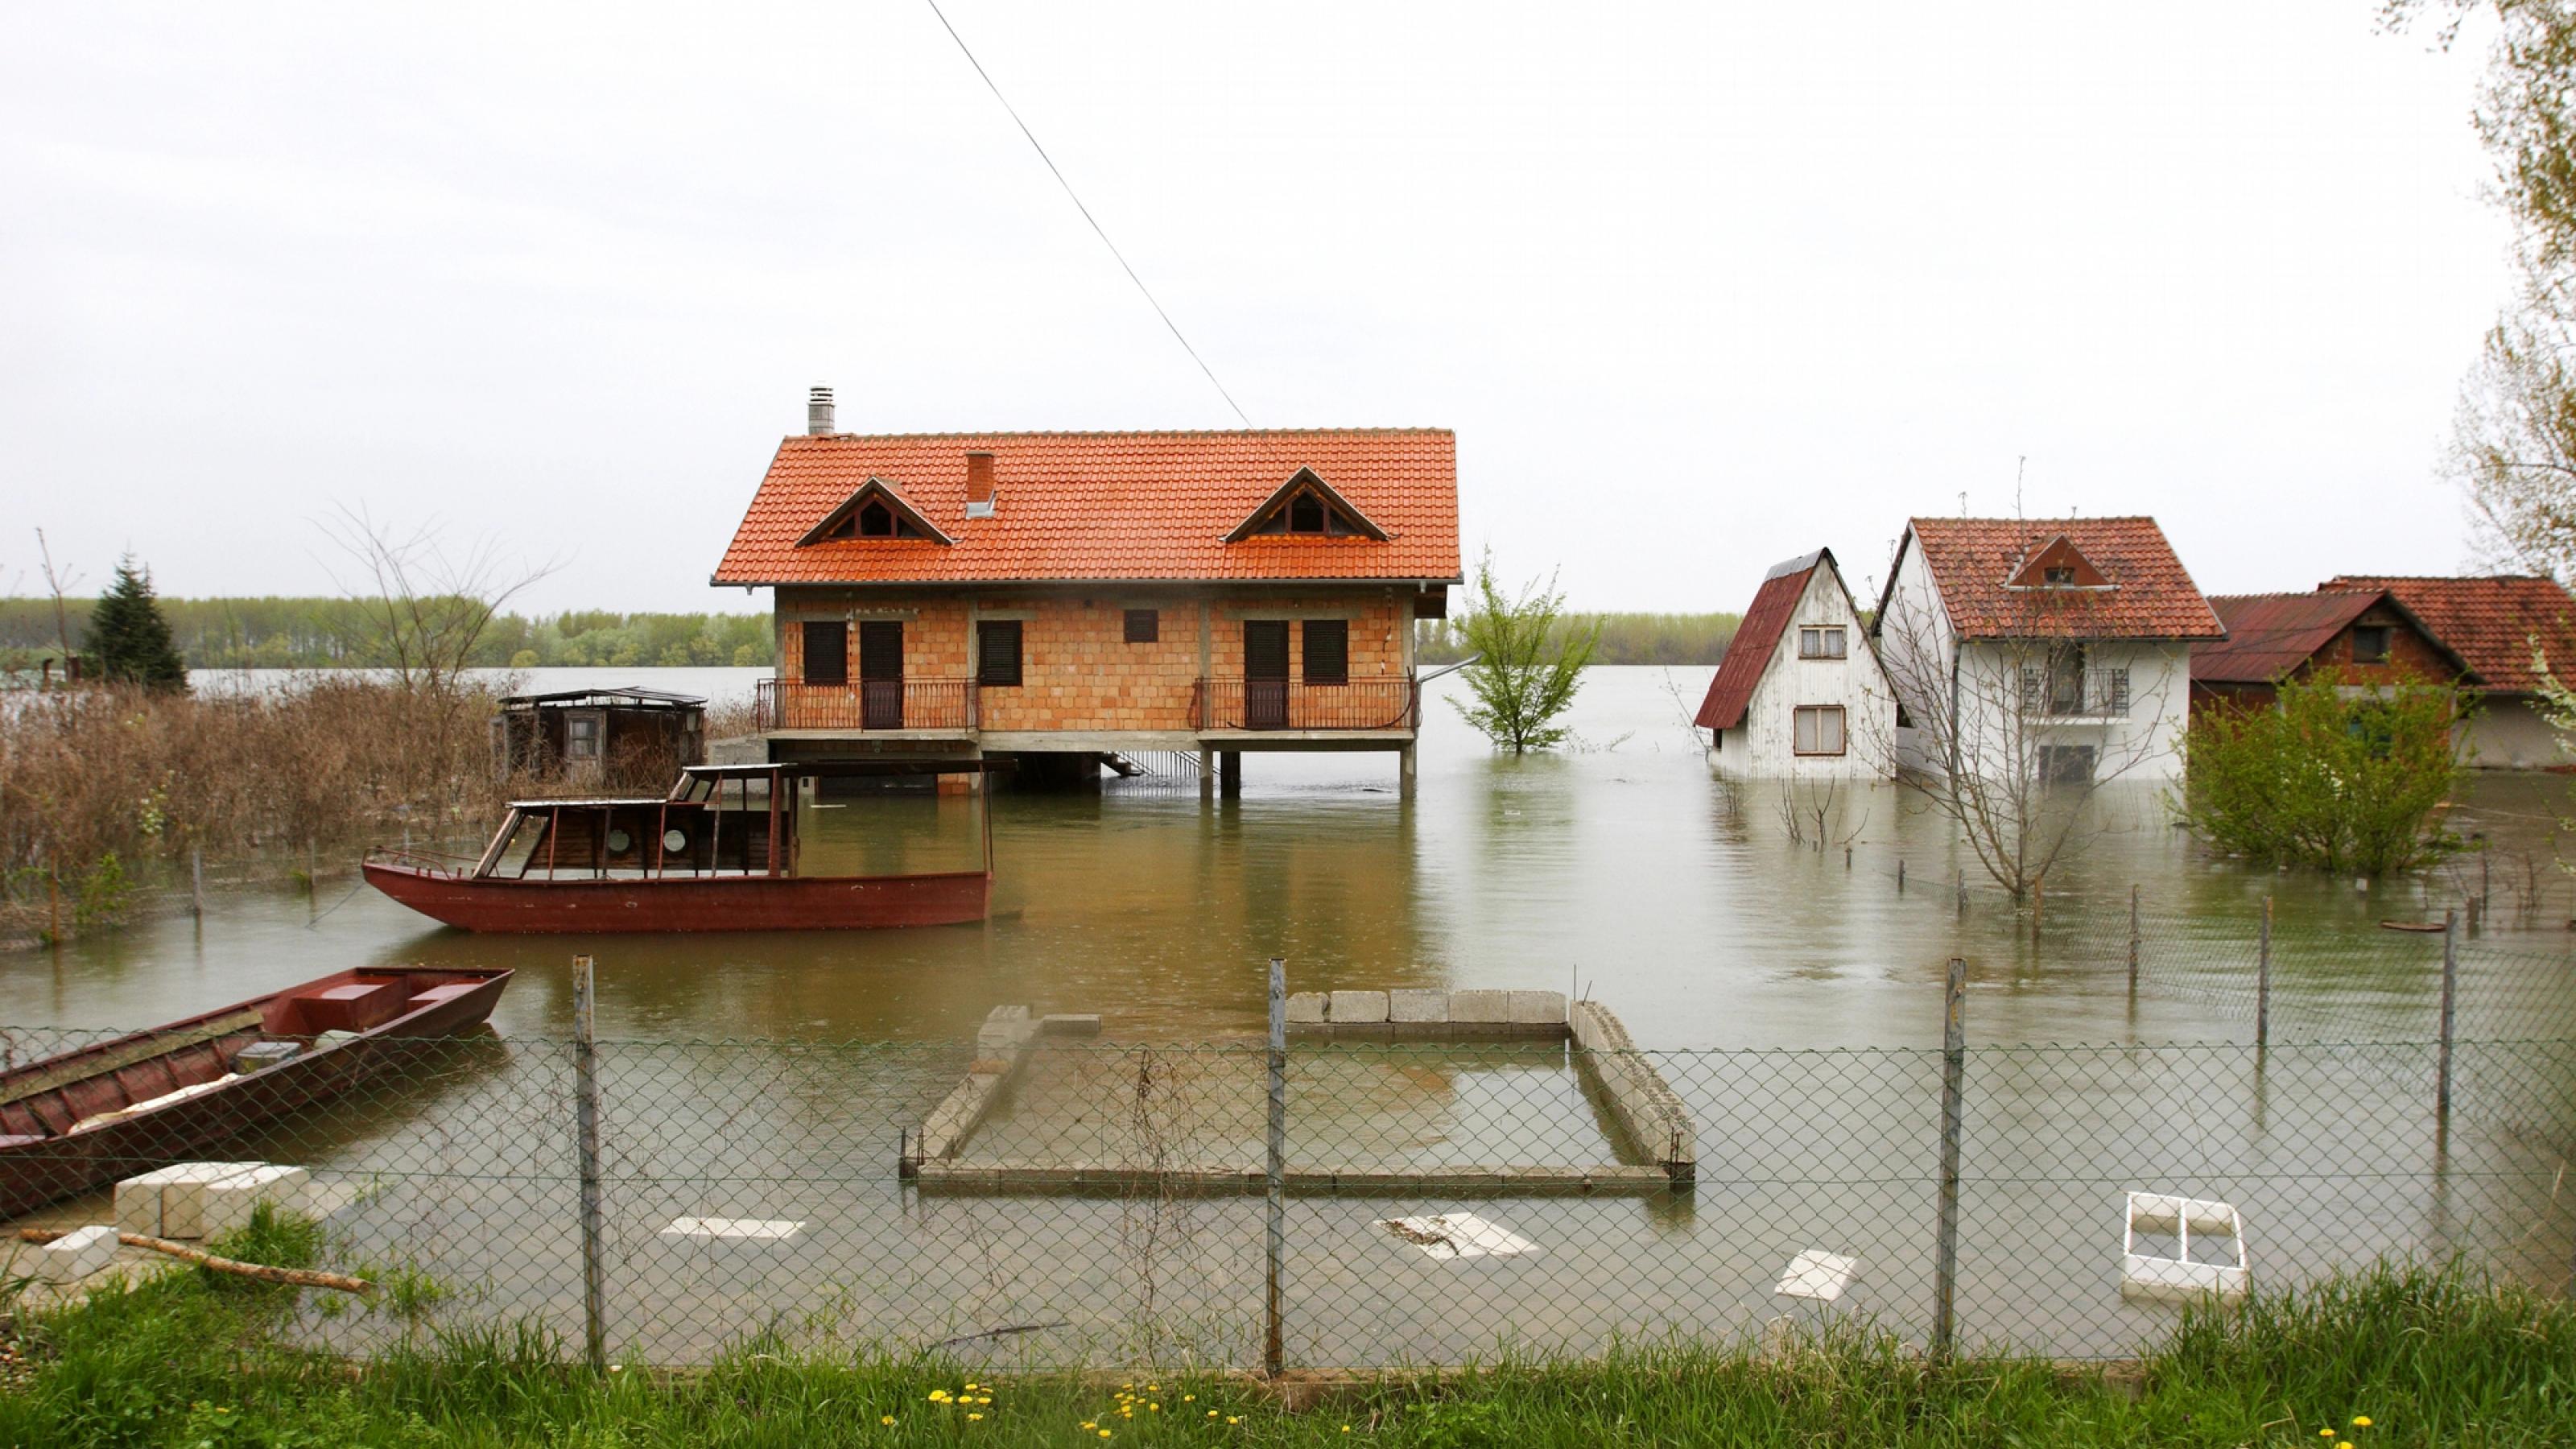 Überschwemmungen können großen Schaden anrichten – rechtzeitige Warnungen können Leben retten.